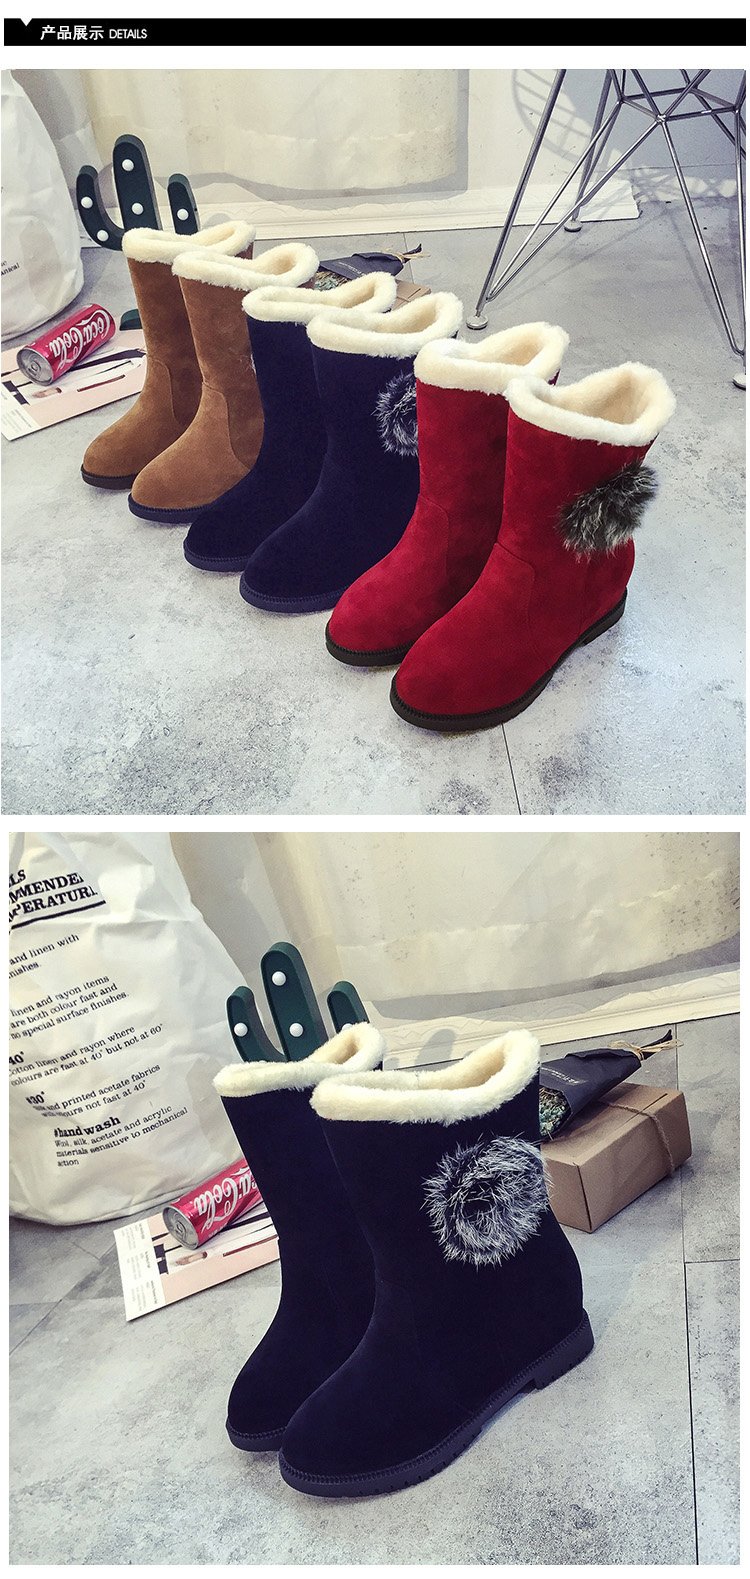 2017新款中筒靴韩版棉鞋女冬季学生保暖加绒潮女士短筒雪地靴厚底